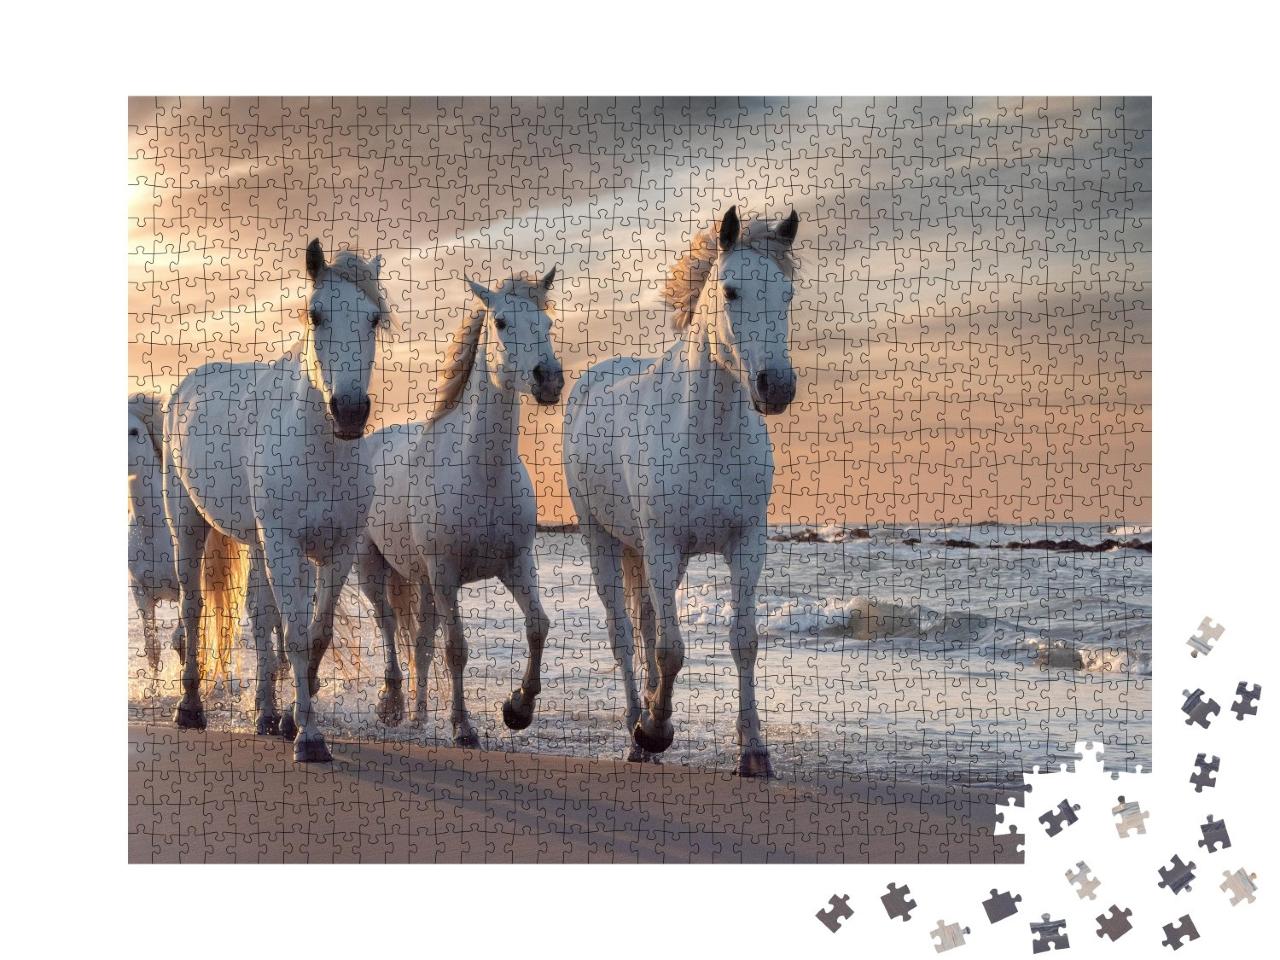 Puzzle de 1000 pièces « Les chevaux blancs de Camargue, France »